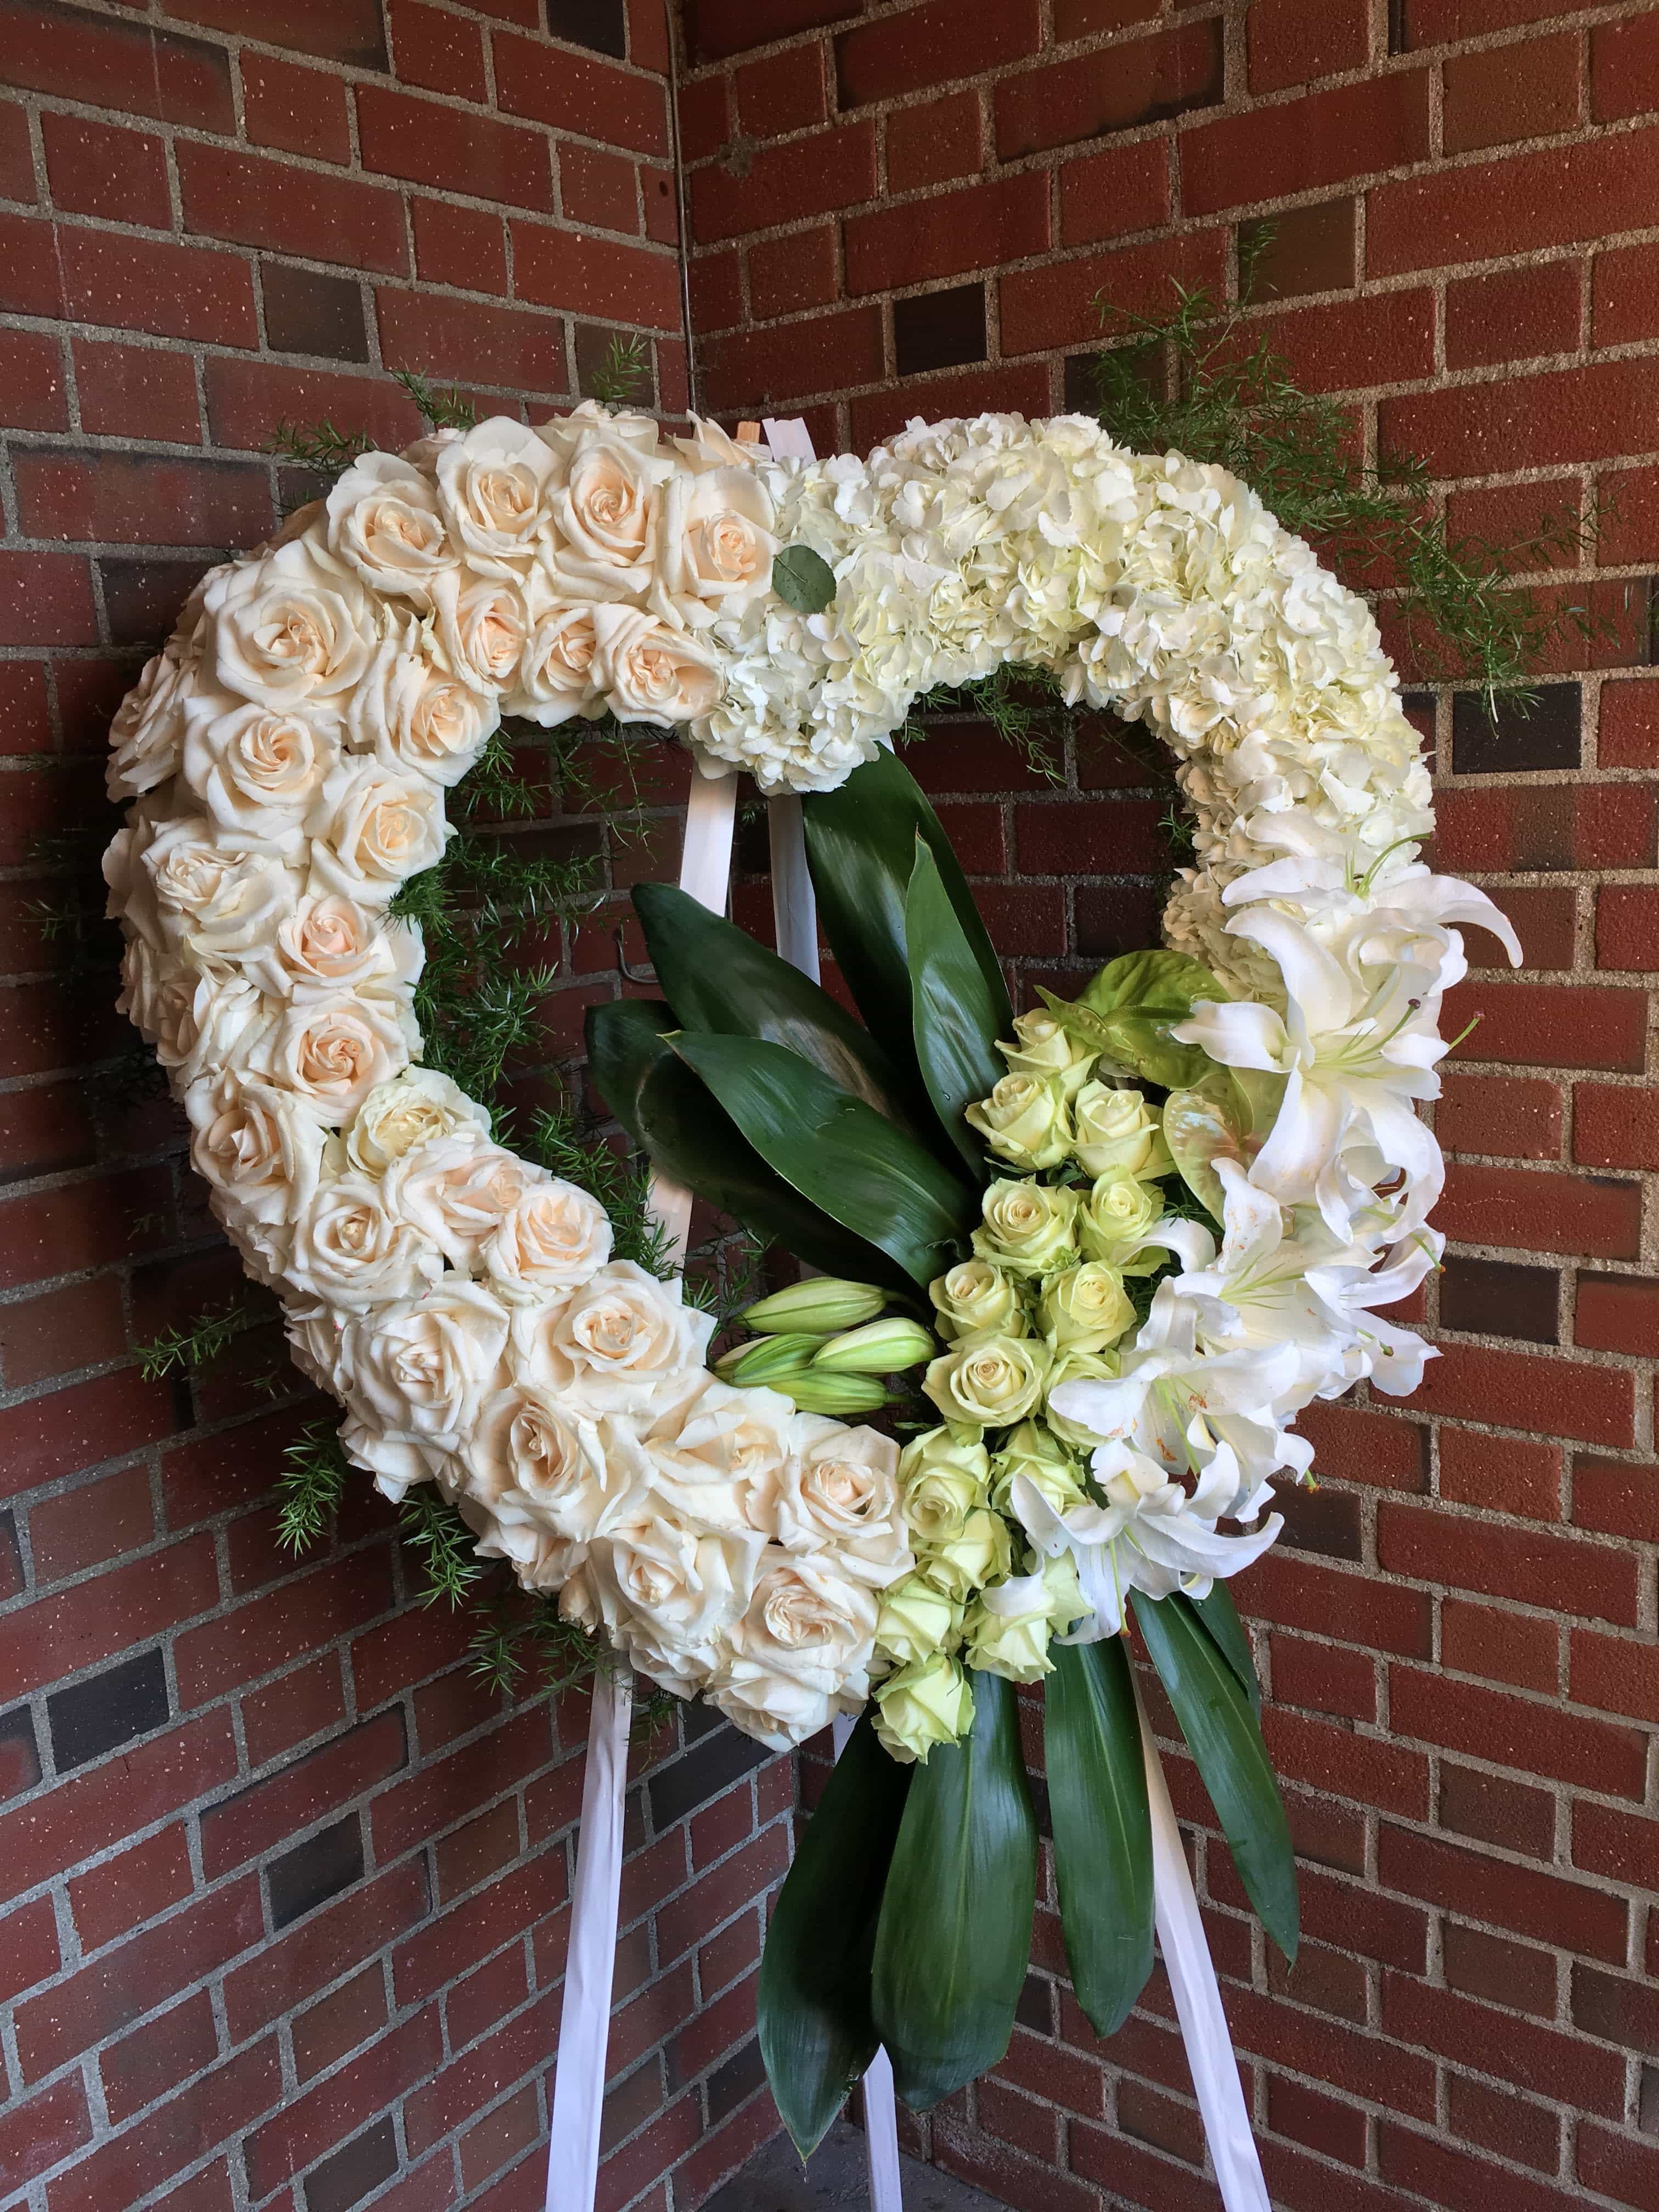 My Glendale Florist, US, unique flower arrangements